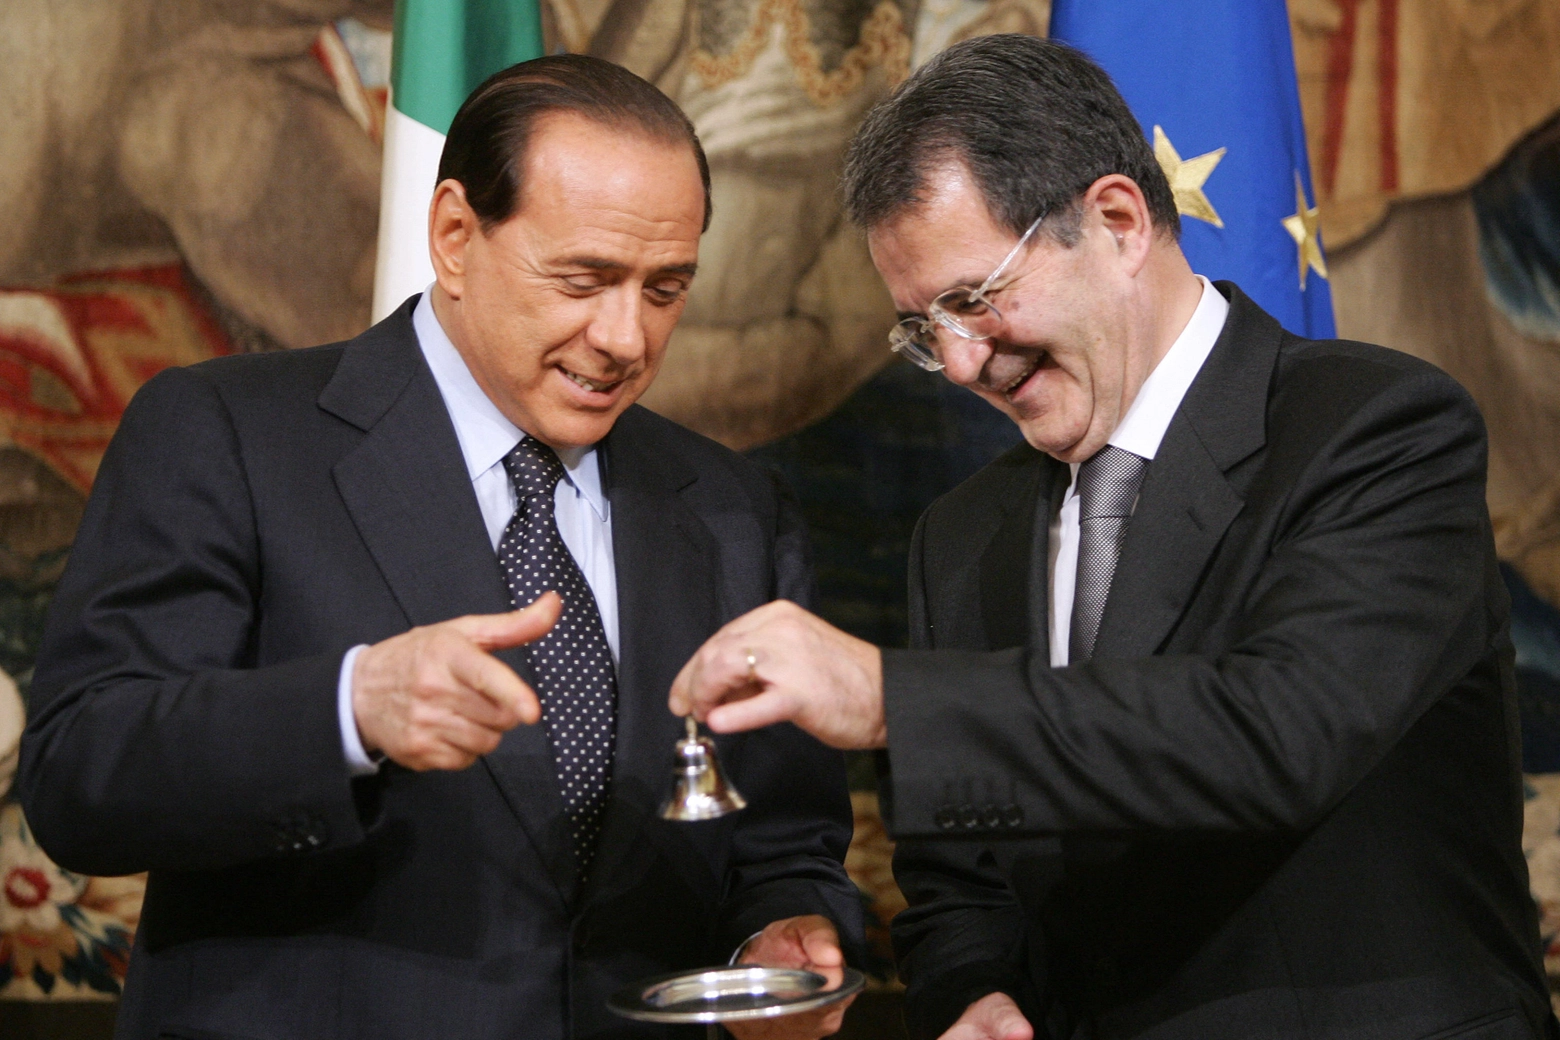 Il passaggio di consegne tra Romano Prodi e Silvio Berlusconi a Palazzo Chigi nel 2006 (Ansa)